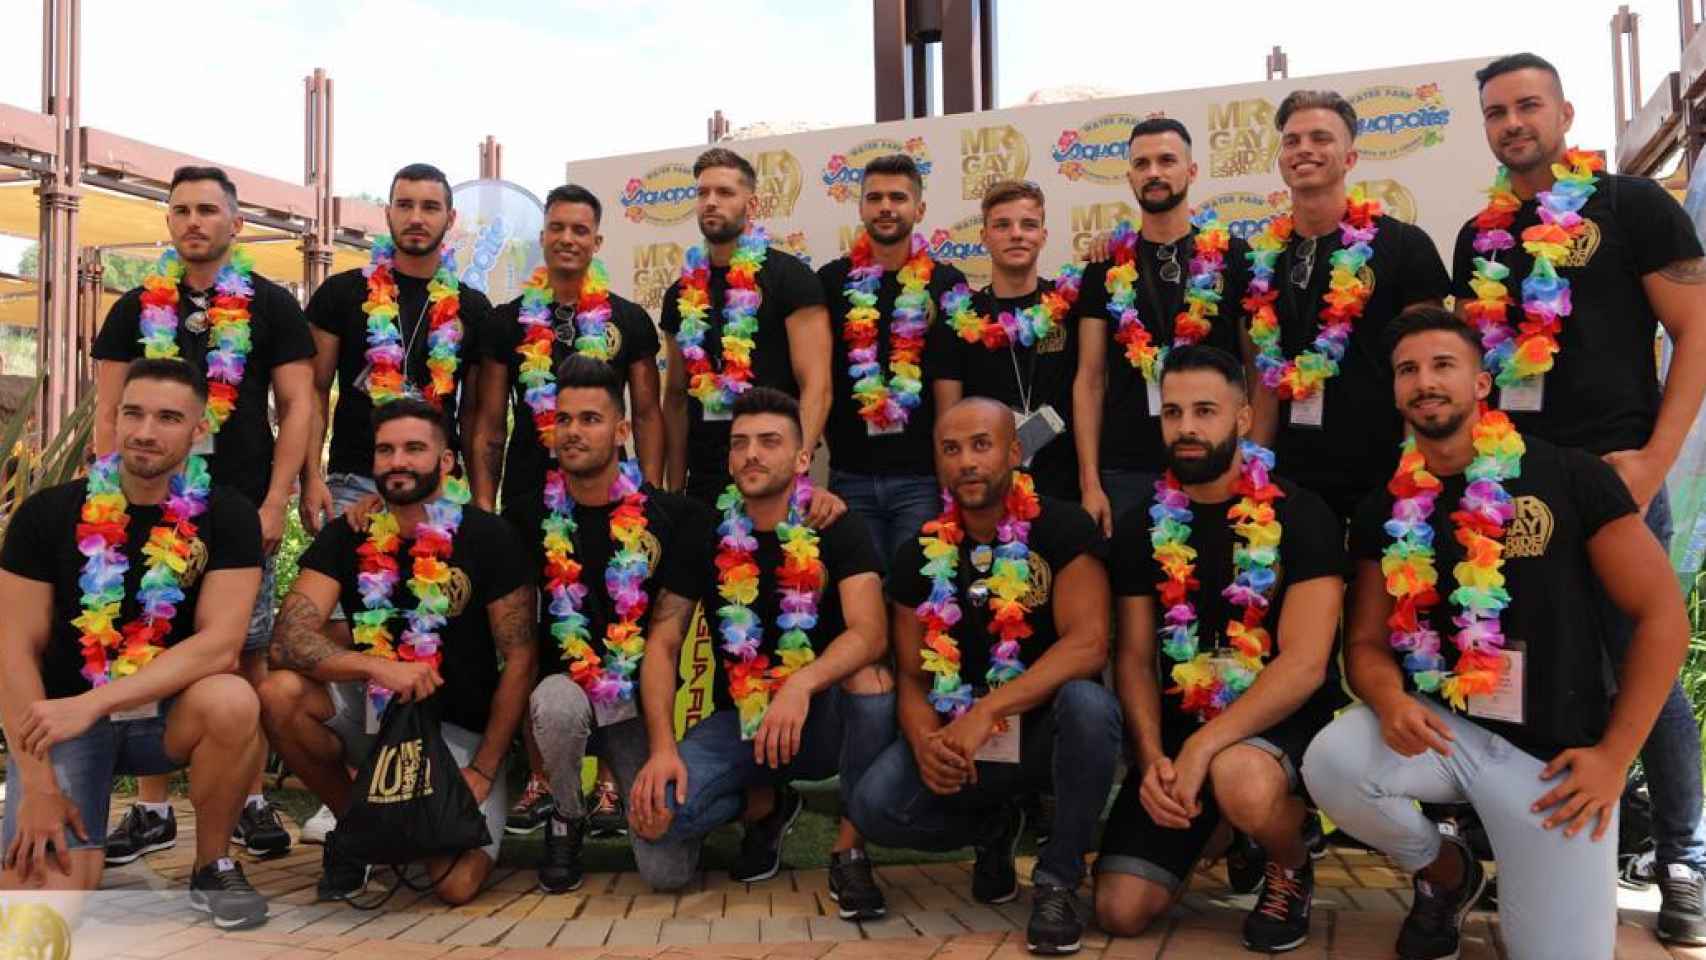 Estos son los 16 finalistas que lucharán por Mr. Gay Pride España 2017